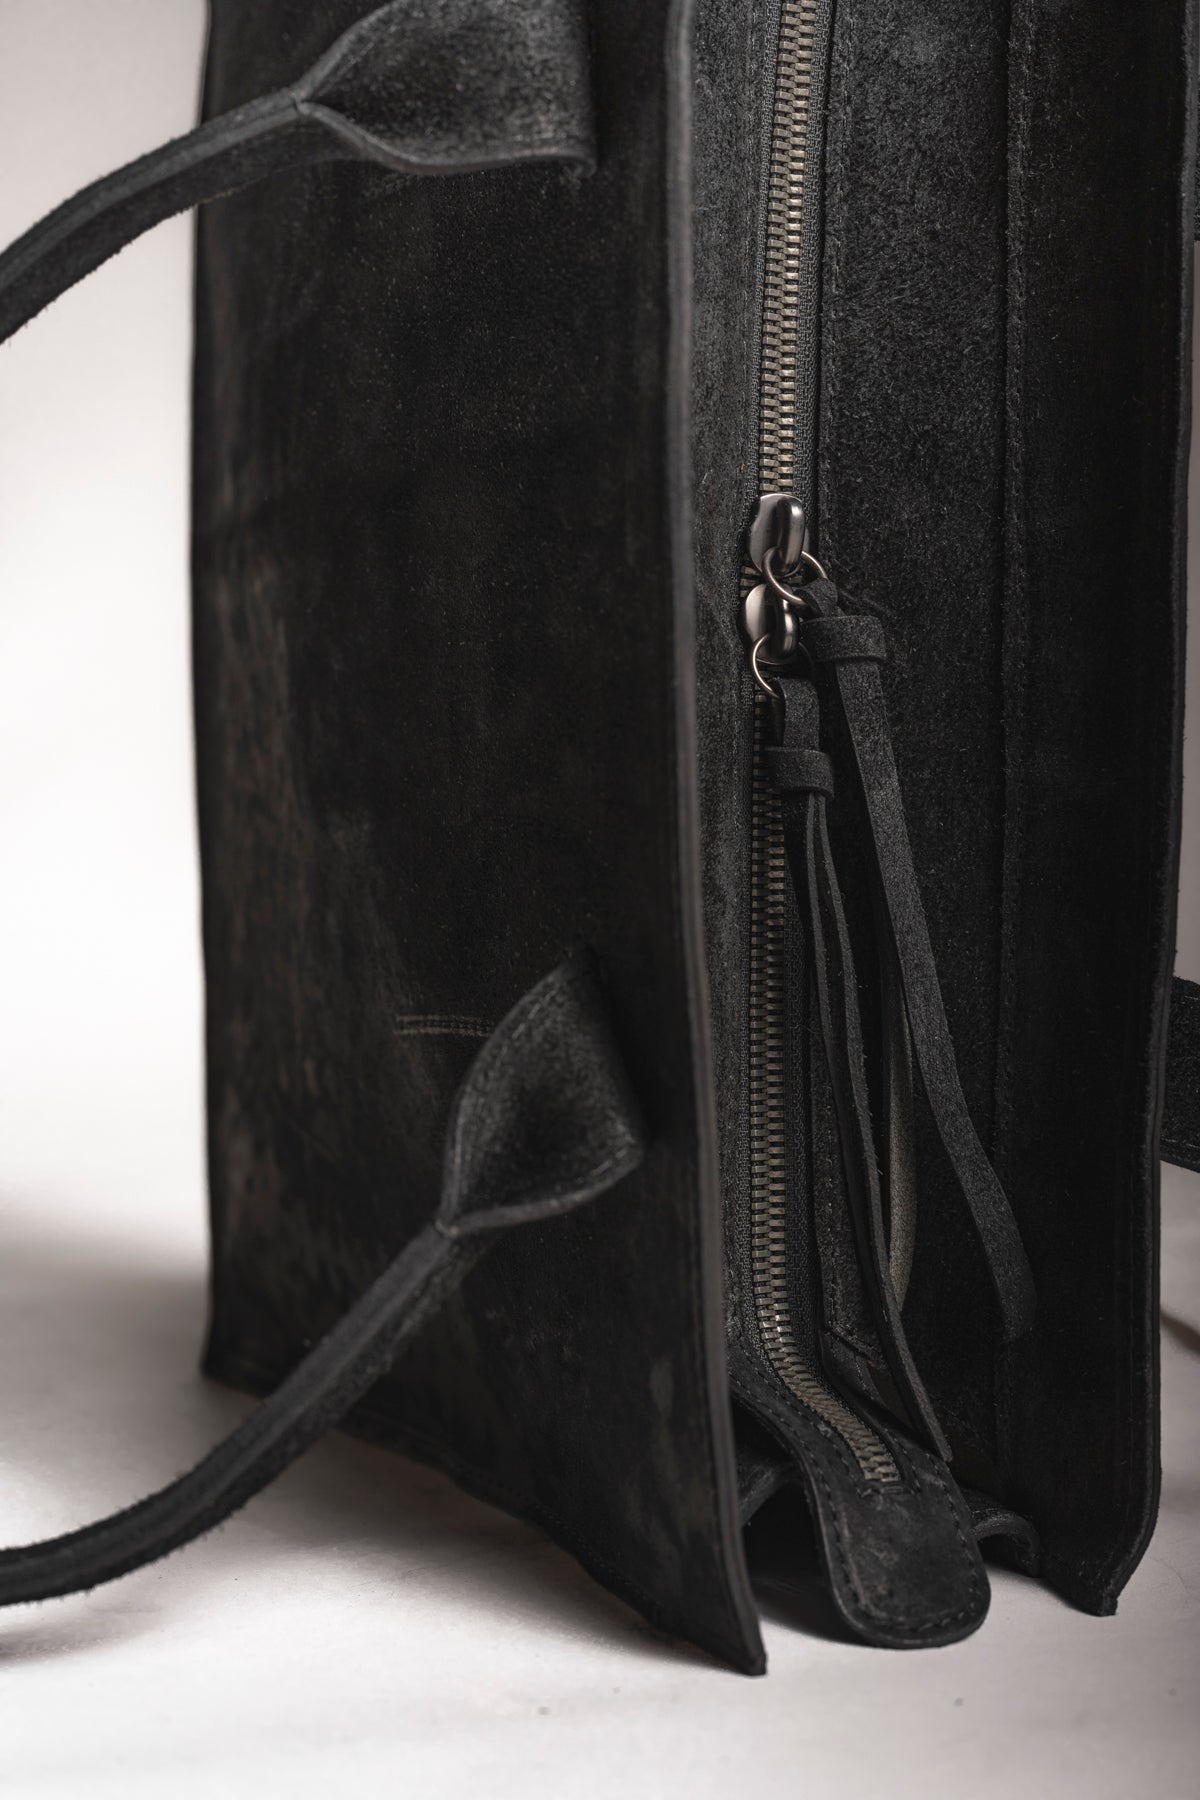 Tagliovivo | Voyager Office | Designer Shopper Tasche in Schwarz aus edlem Leder